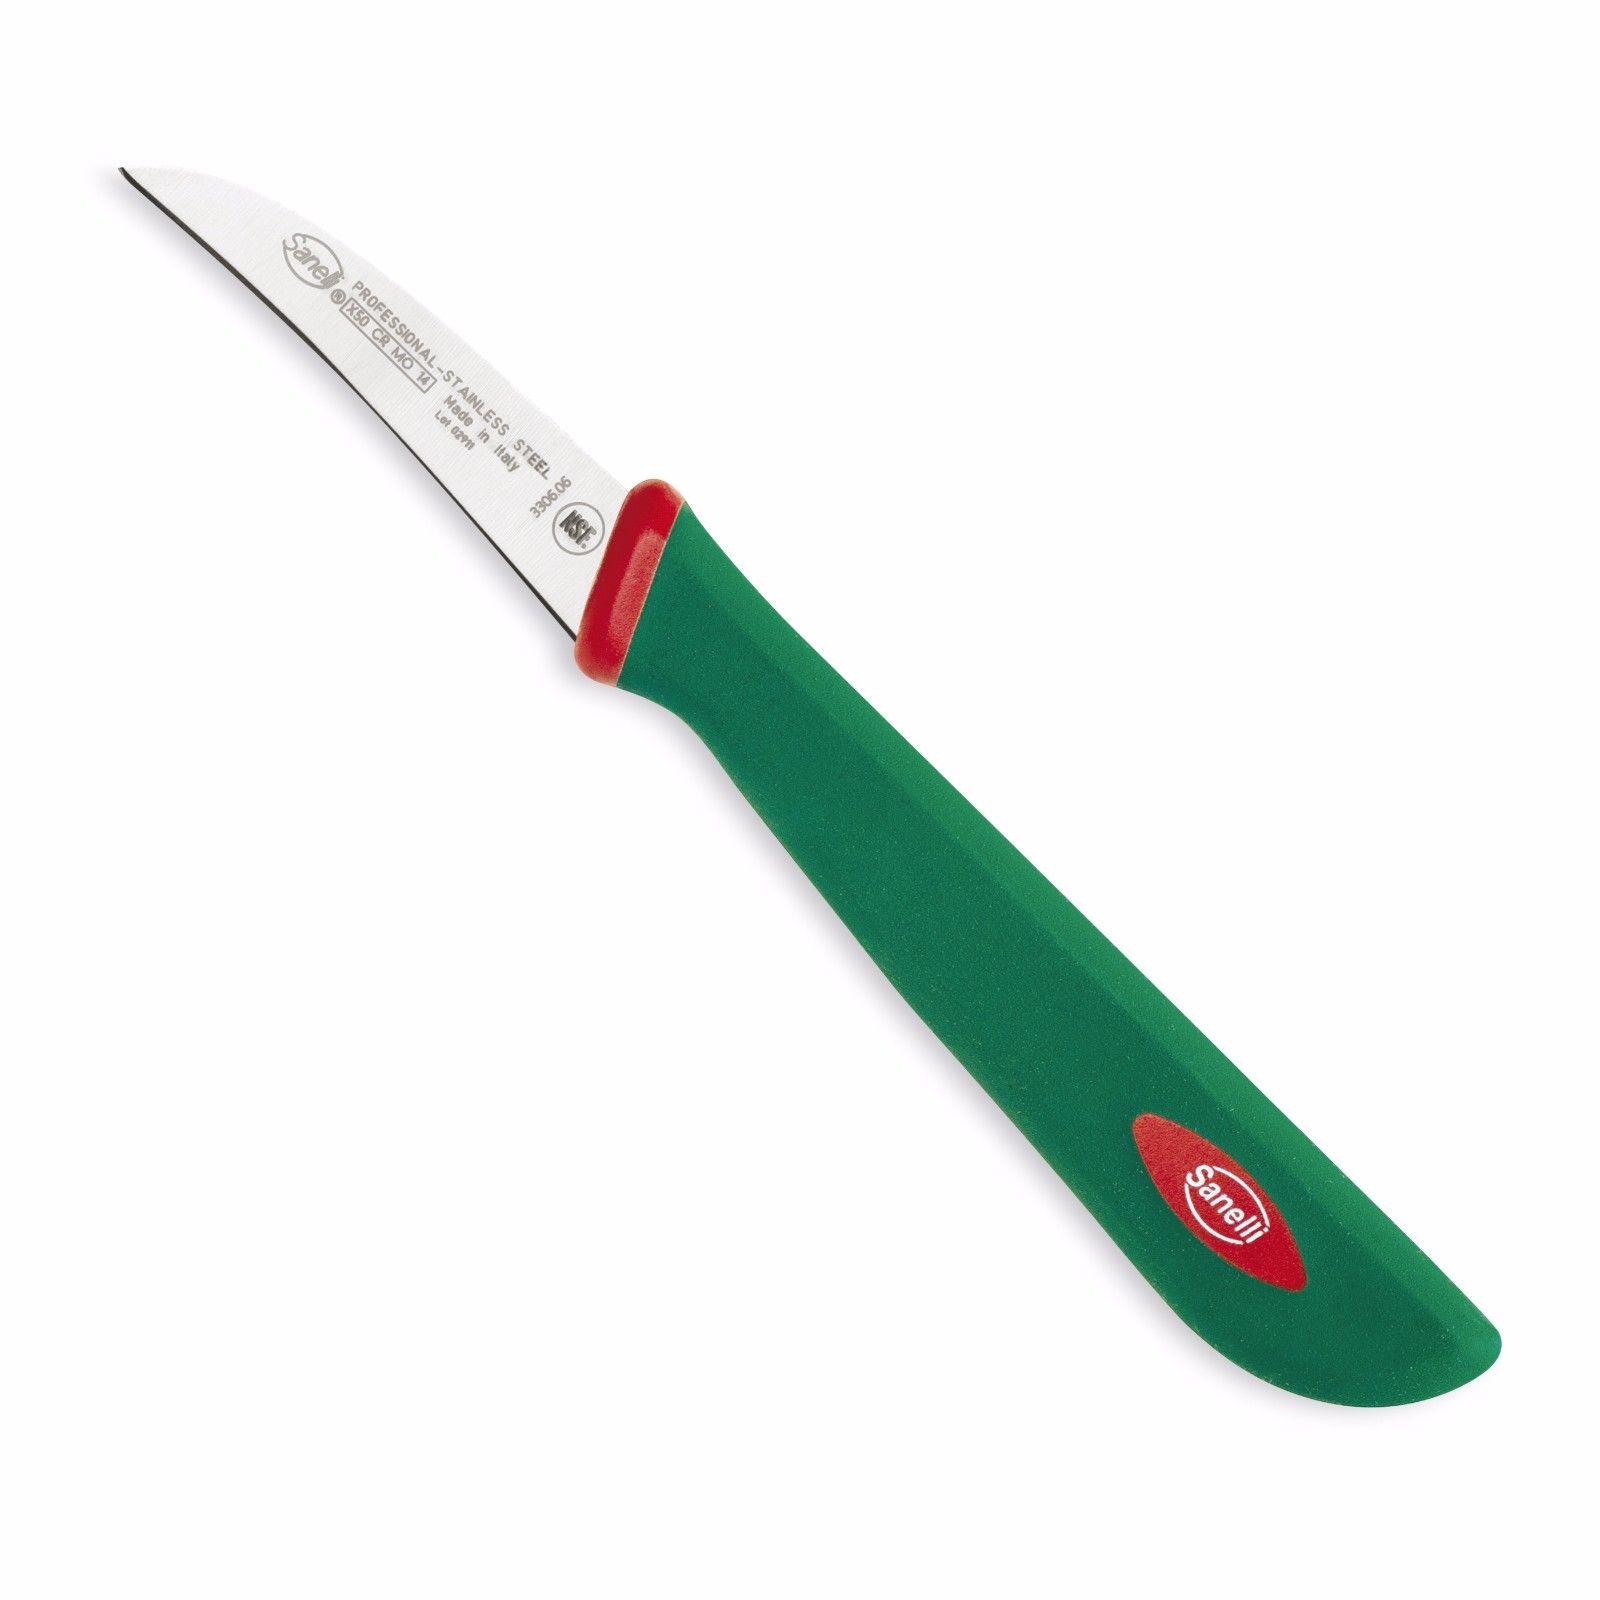 Coltellerie Sanelli coltello verdura cm 6 Premana Professional 330606 -  Paggi Casalinghi